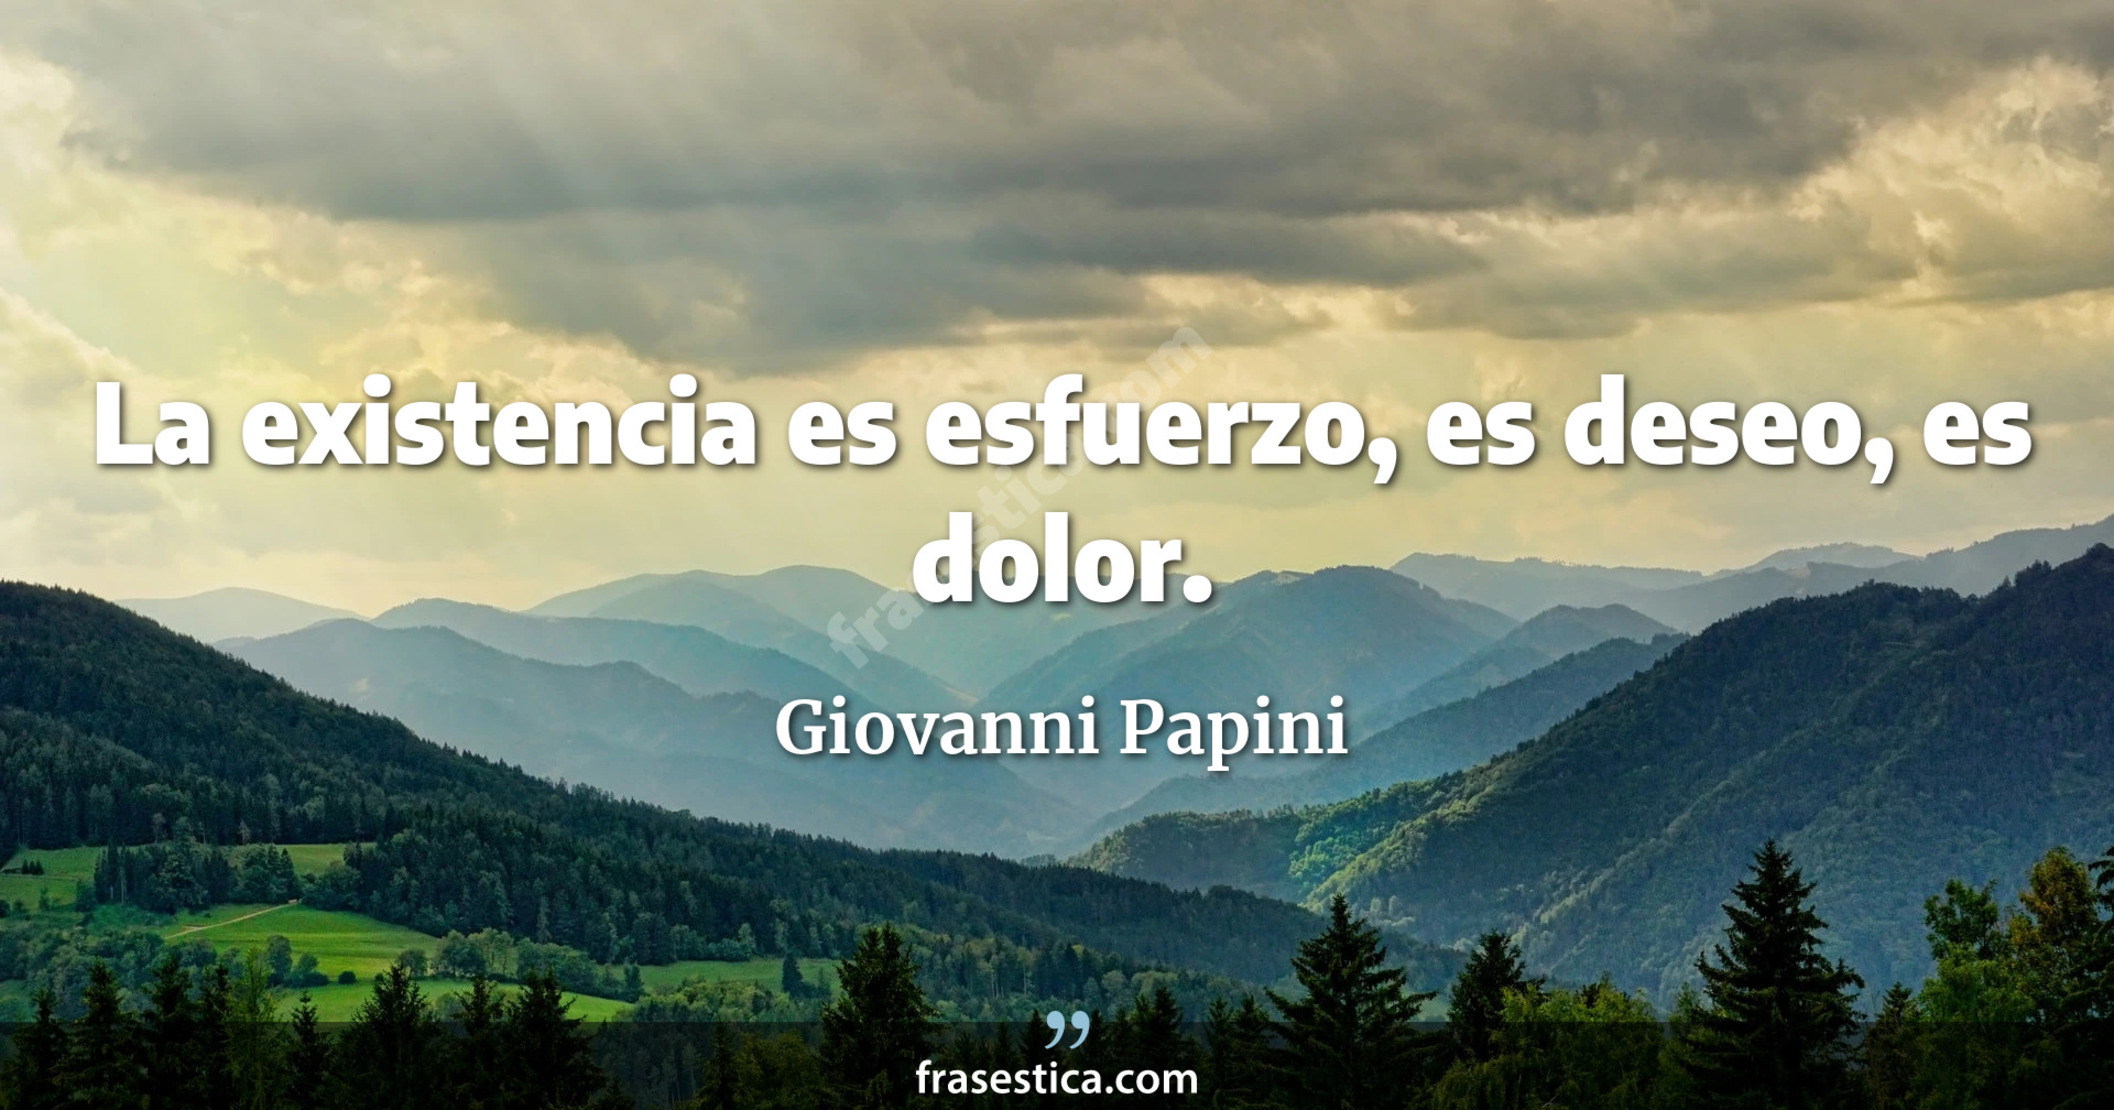 La existencia es esfuerzo, es deseo, es dolor. - Giovanni Papini